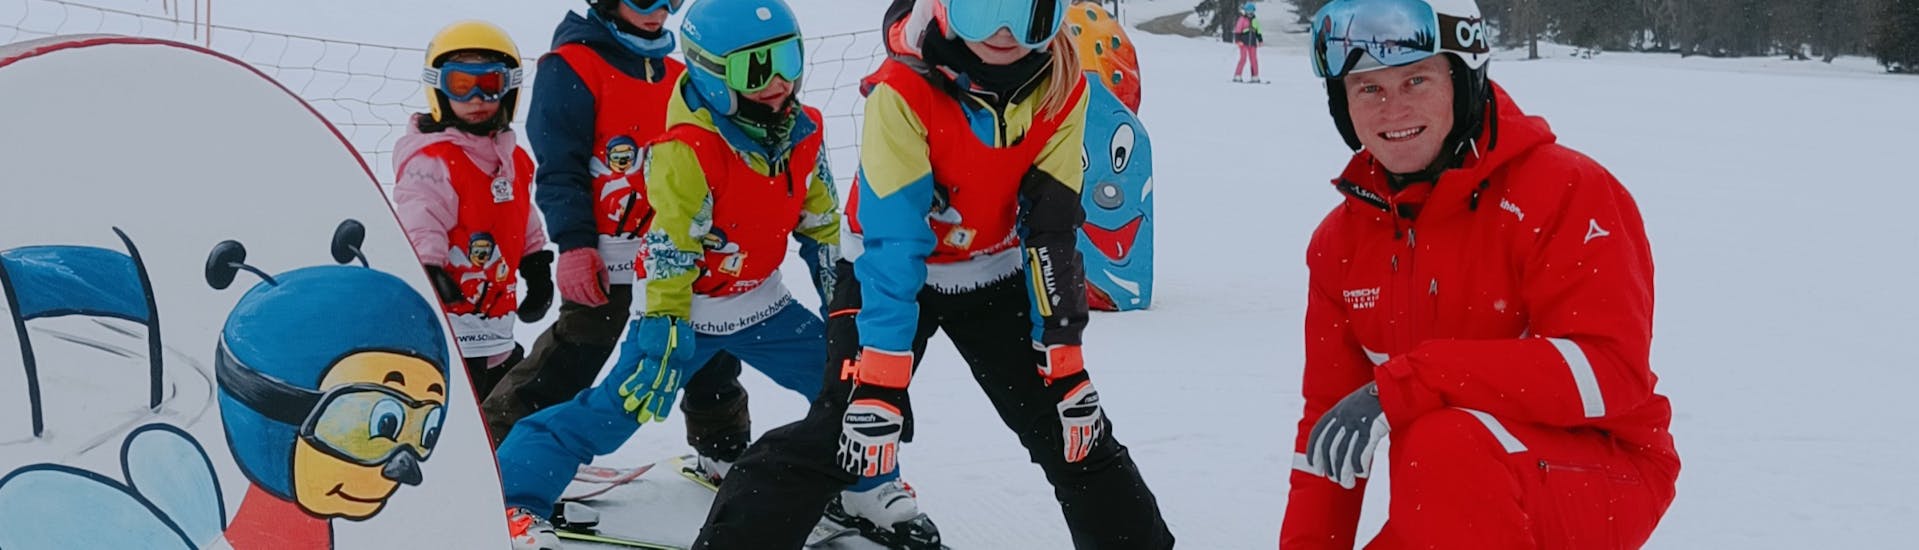 Kinderen bij hun skilessen voor gevorderden bij de skischool Kreischberg - Mayer.